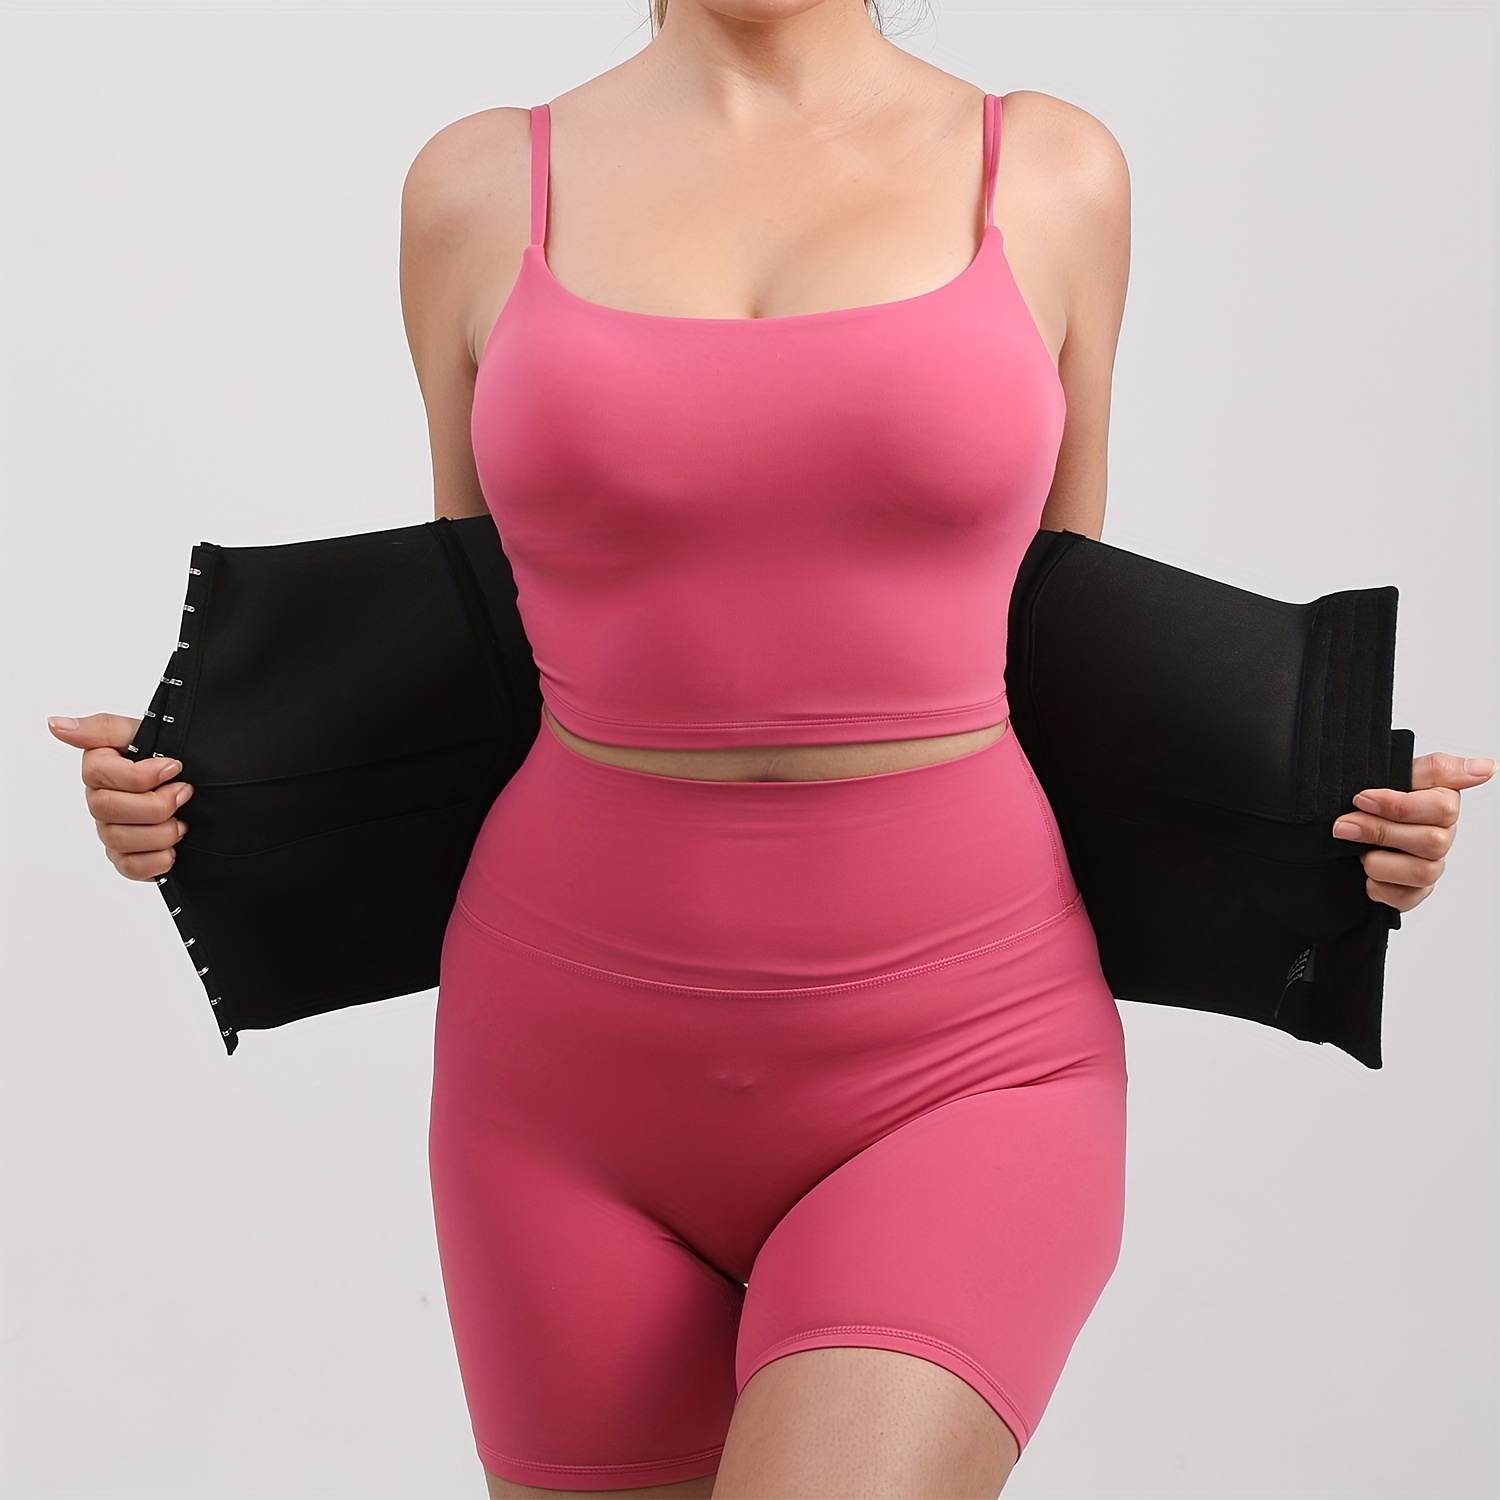  DreamHigh Women's Latex Waist Trainer Corset Shaper Cincher  Shapewear XL Pink : Sports & Outdoors